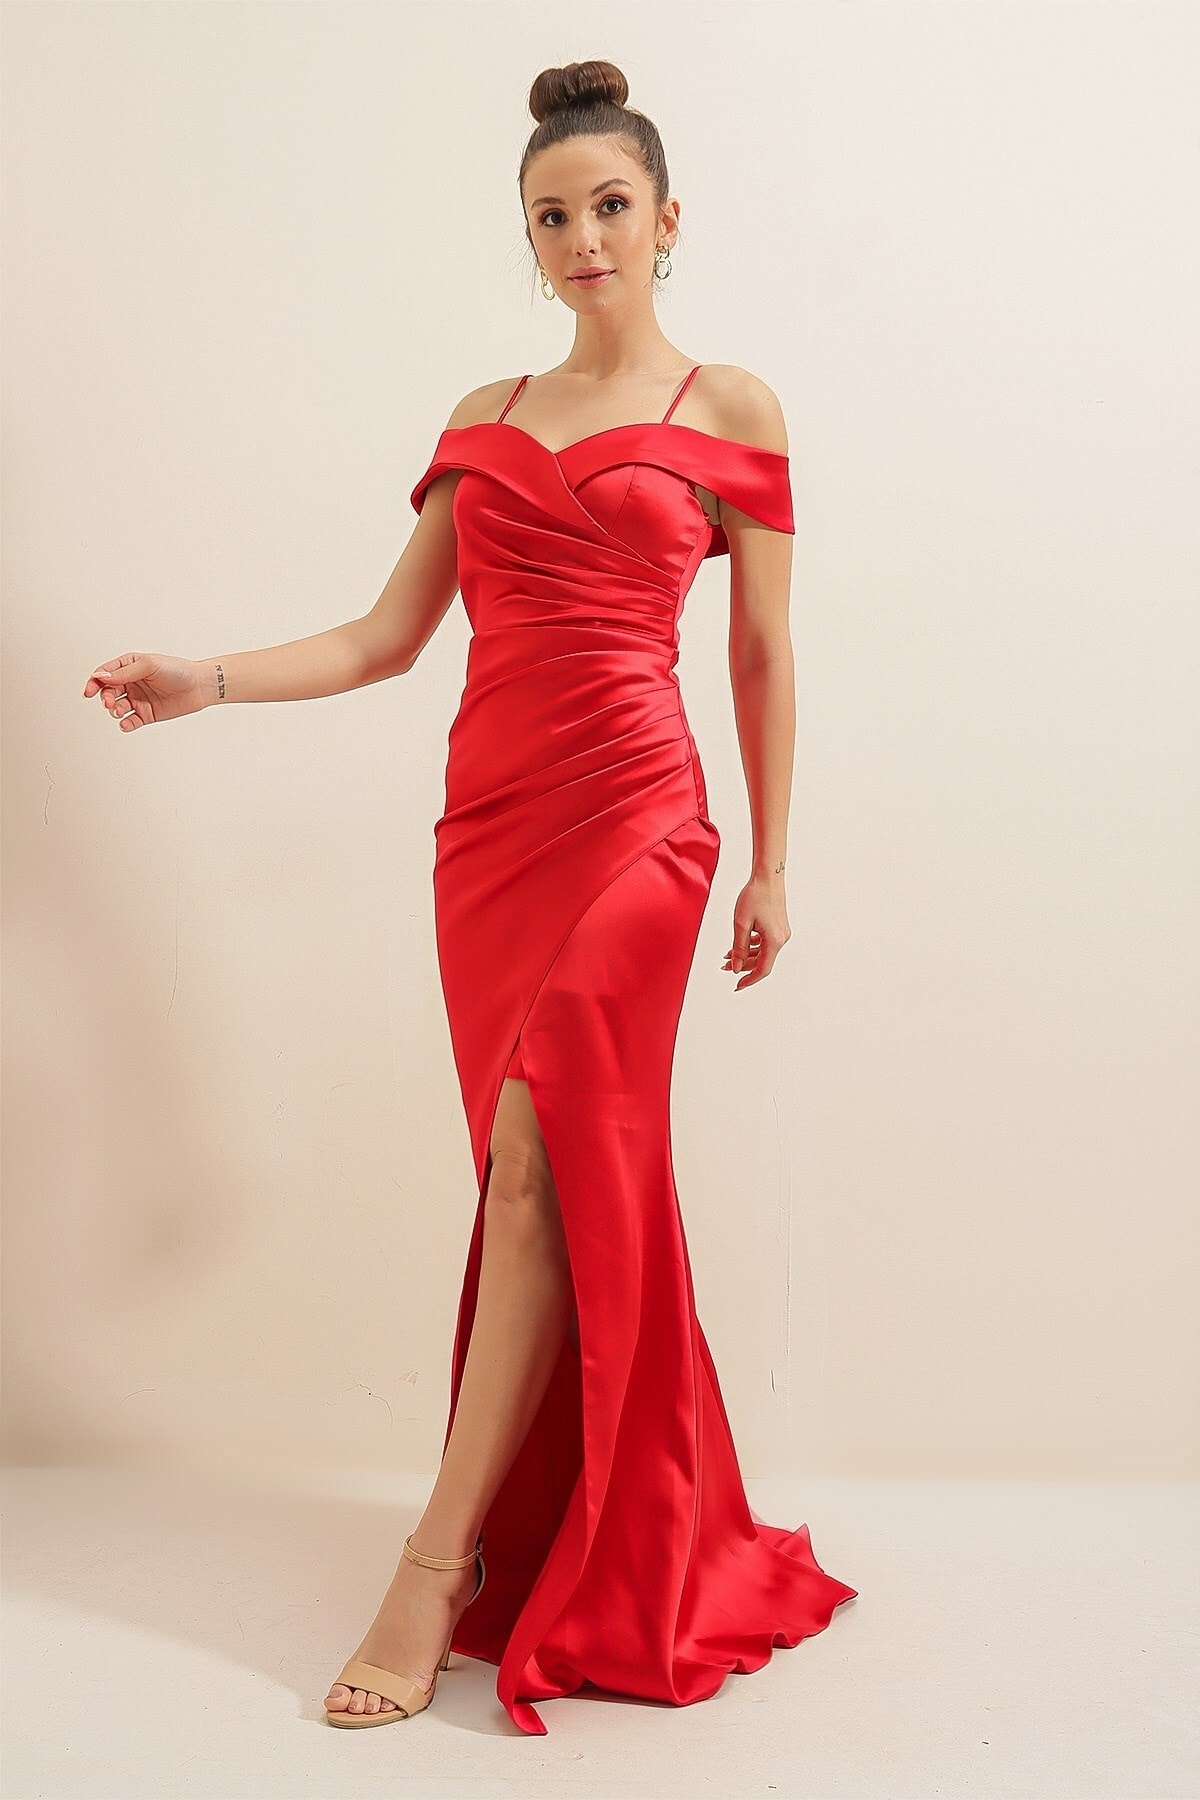 Levně By Saygı Sukně s úzkým výstřihem Plisovaná podšívka Satén Dlouhé šaty Červená